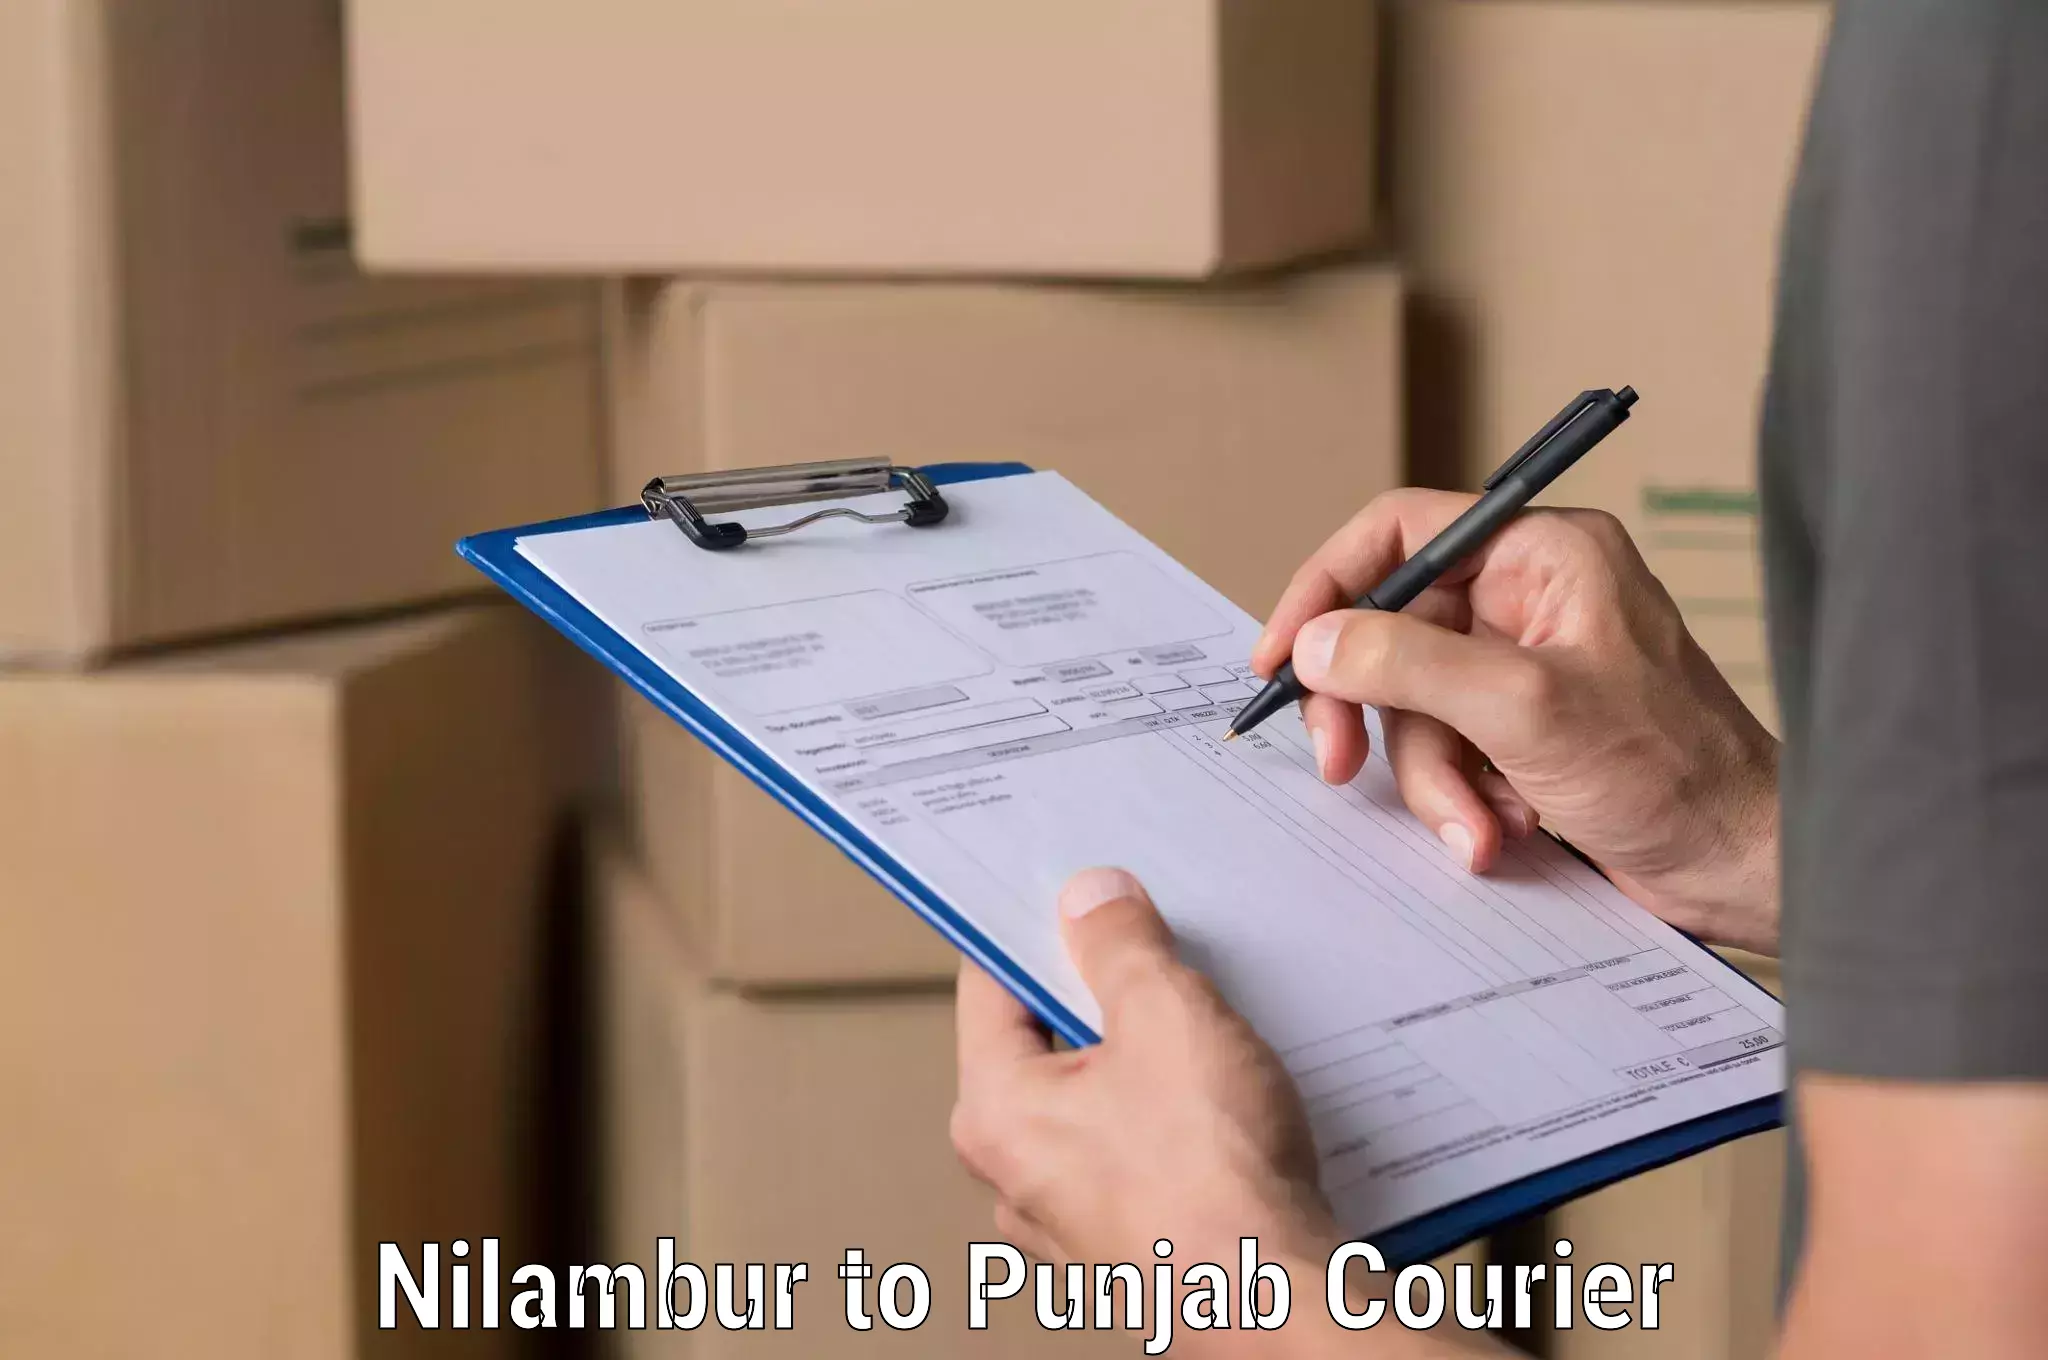 Customer-focused courier Nilambur to Moga